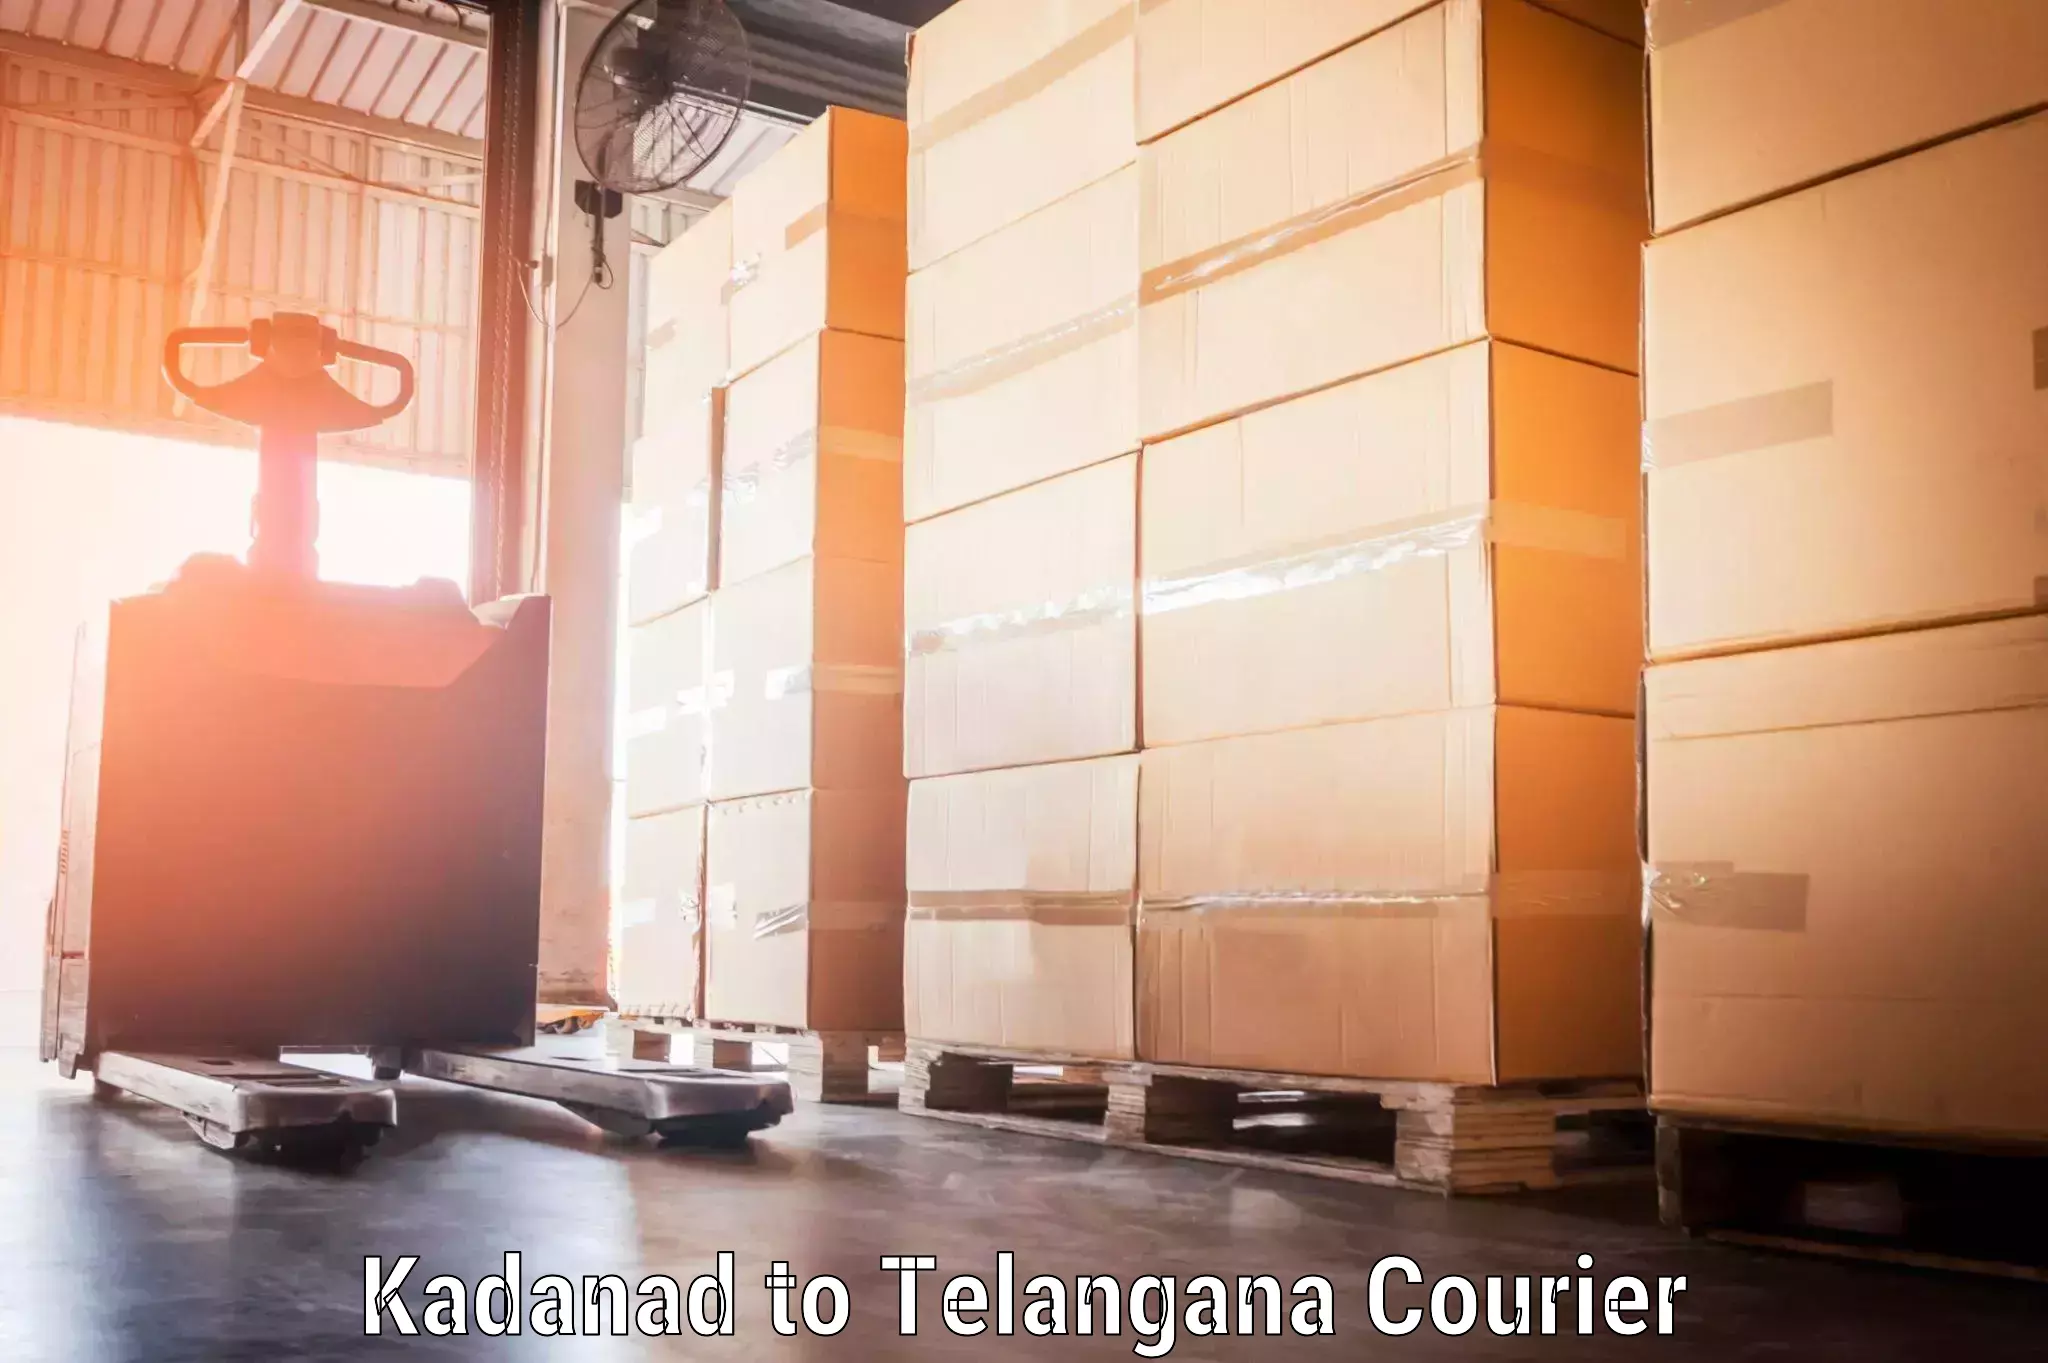 Baggage transport updates Kadanad to Telangana